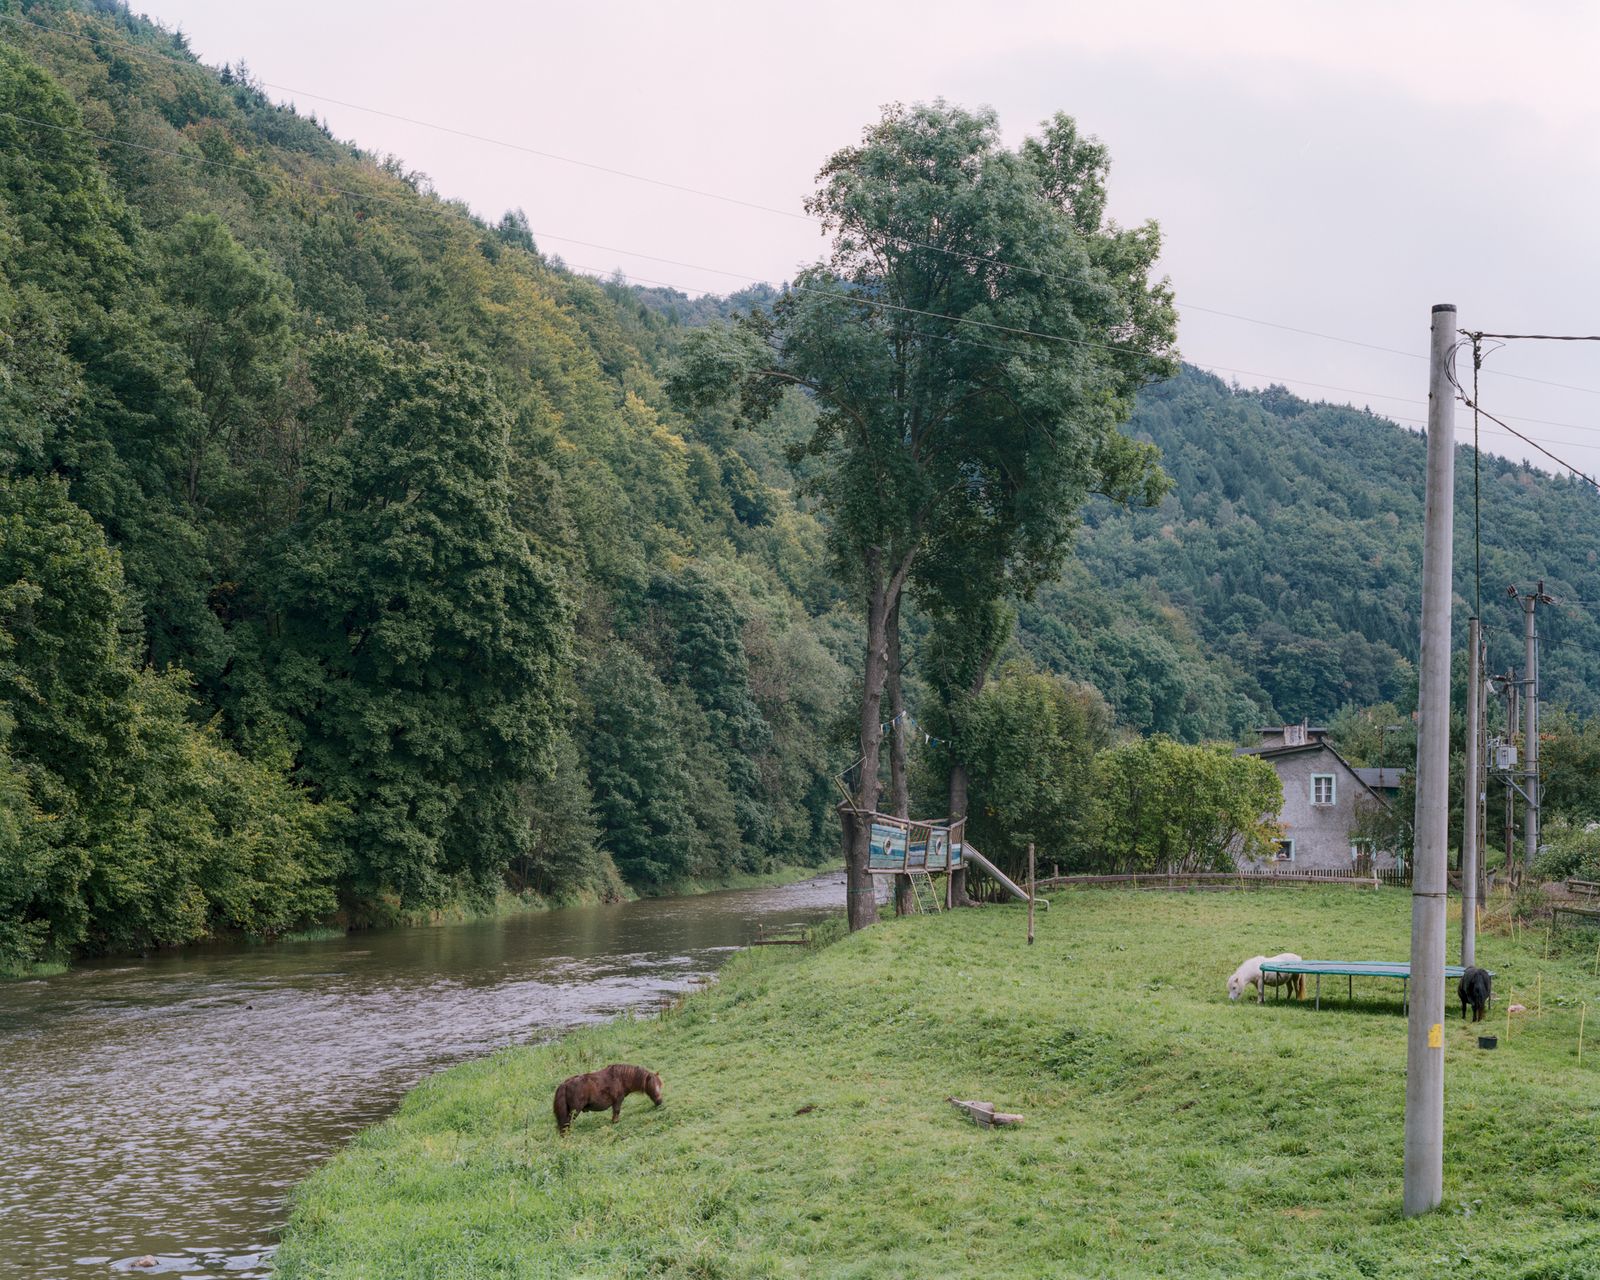 © Michał Sierakowski - Bóbr river near Miedzianka, 2014